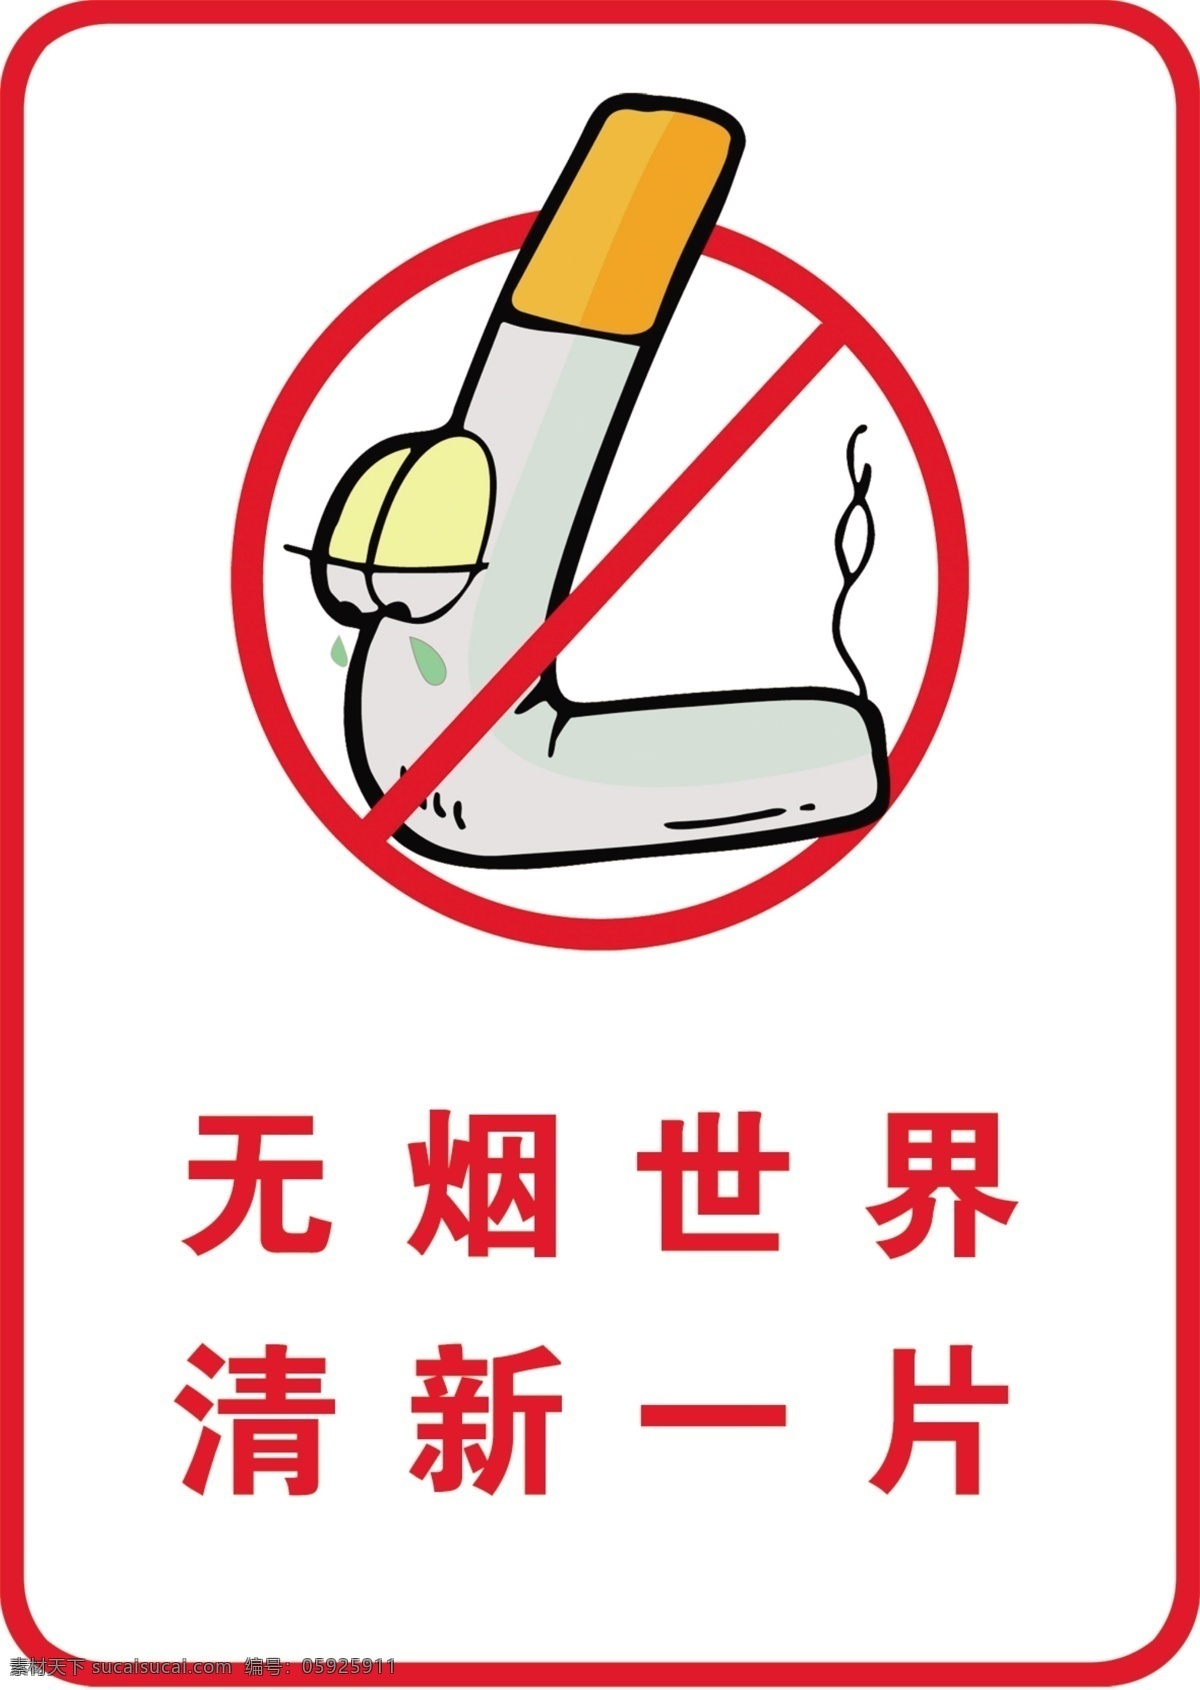 禁烟标牌 无烟 世界 清新 禁止 吸烟